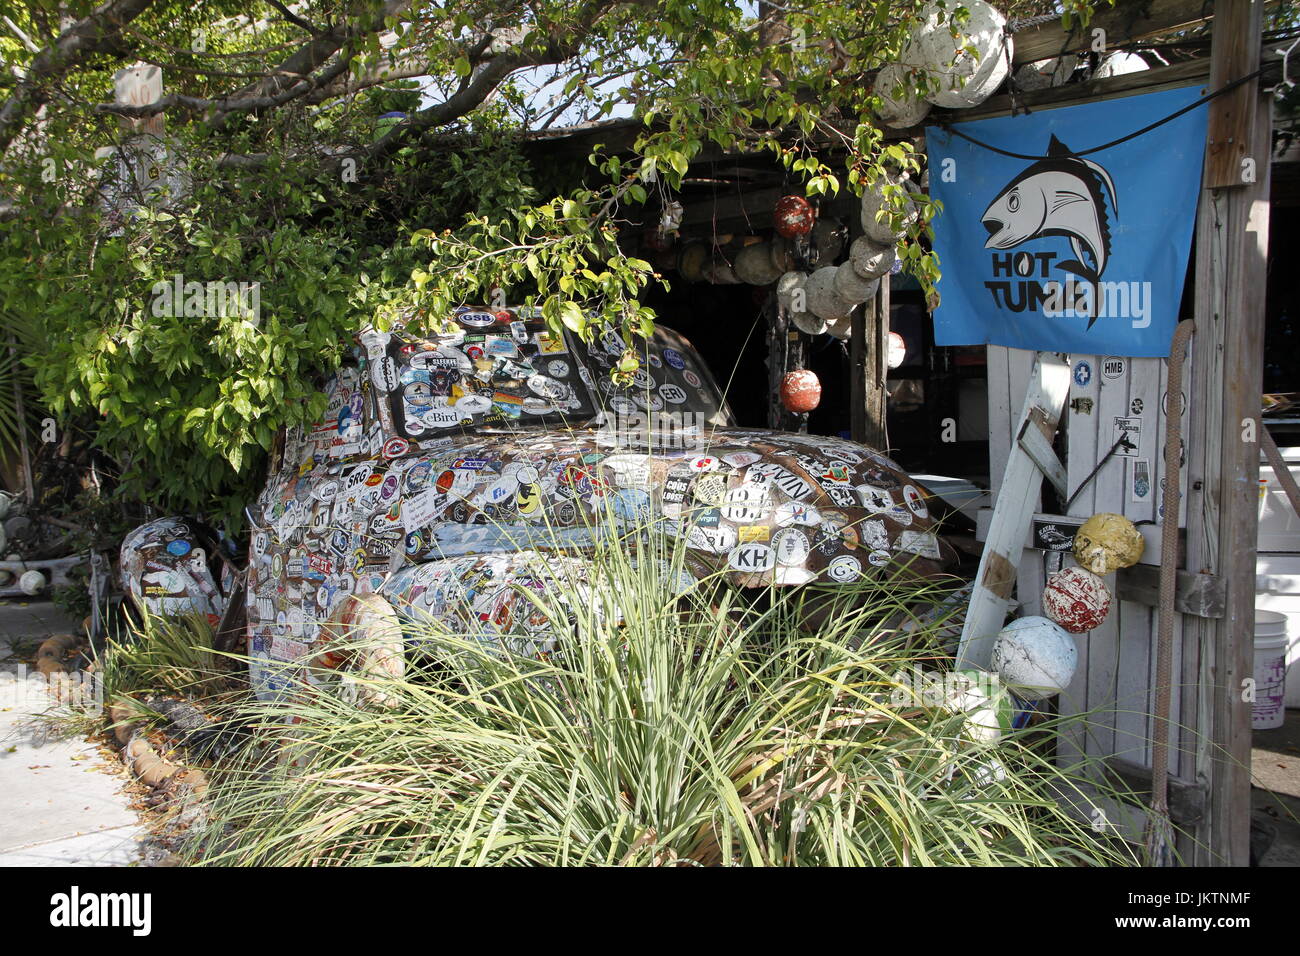 Eingerichtete alte Fahrzeug zwischen Bäumen mit Hot Tuna Flagge, Key West Florida ausgeblendet Stockfoto